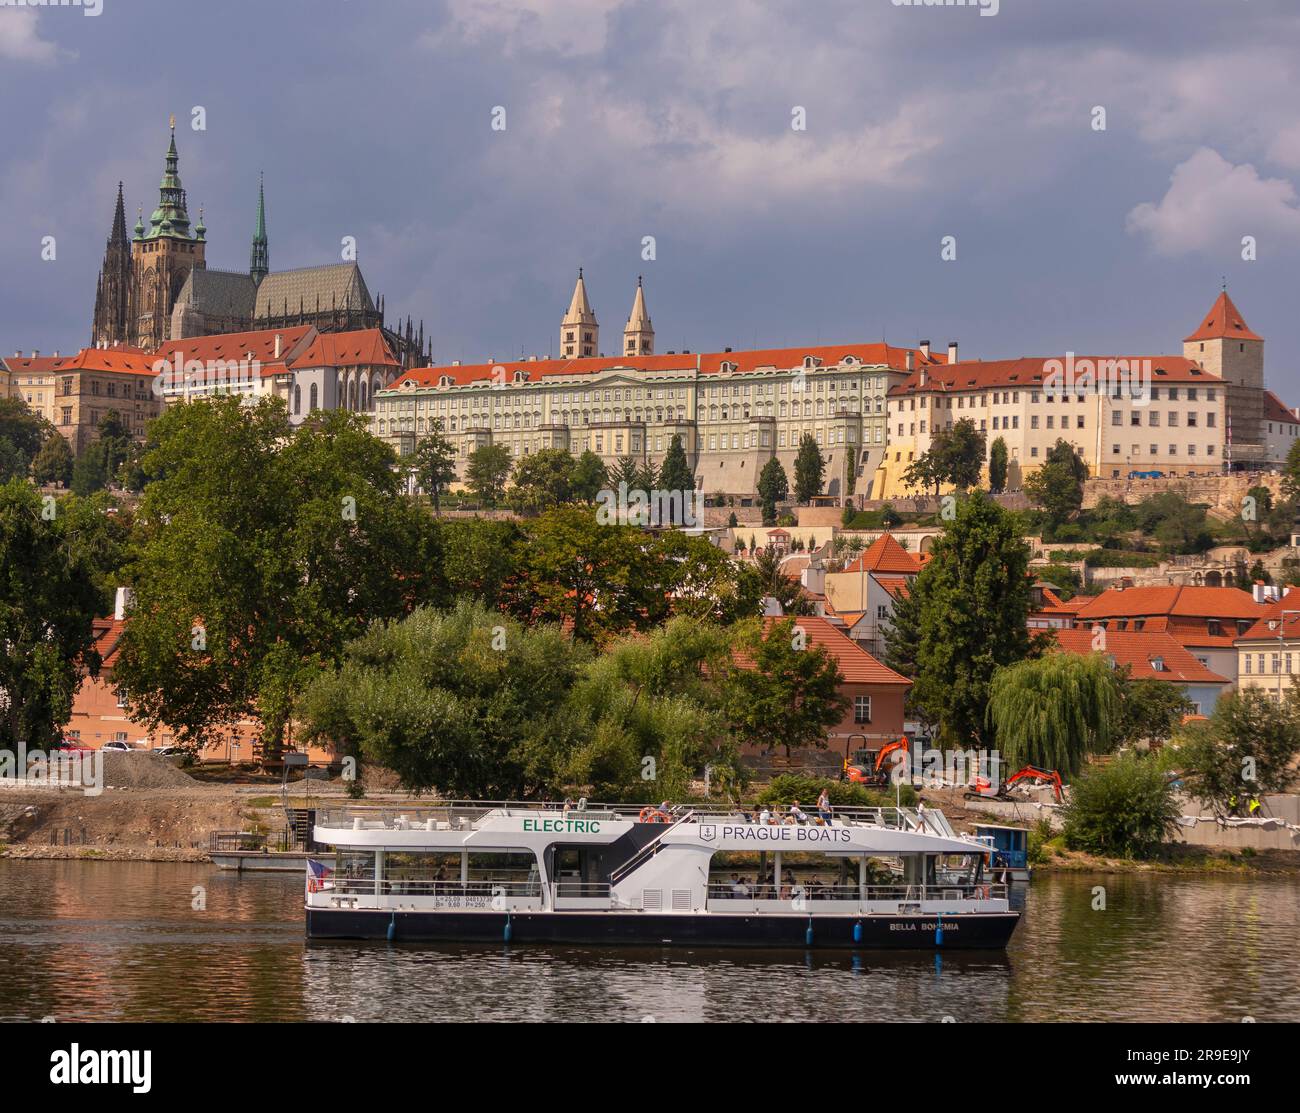 PRAGA, REPÚBLICA CHECA, EUROPA - Crucero en barco por el río Moldava. Catedral de San Vito, arriba a la izquierda, y Castillo de Praga. Foto de stock